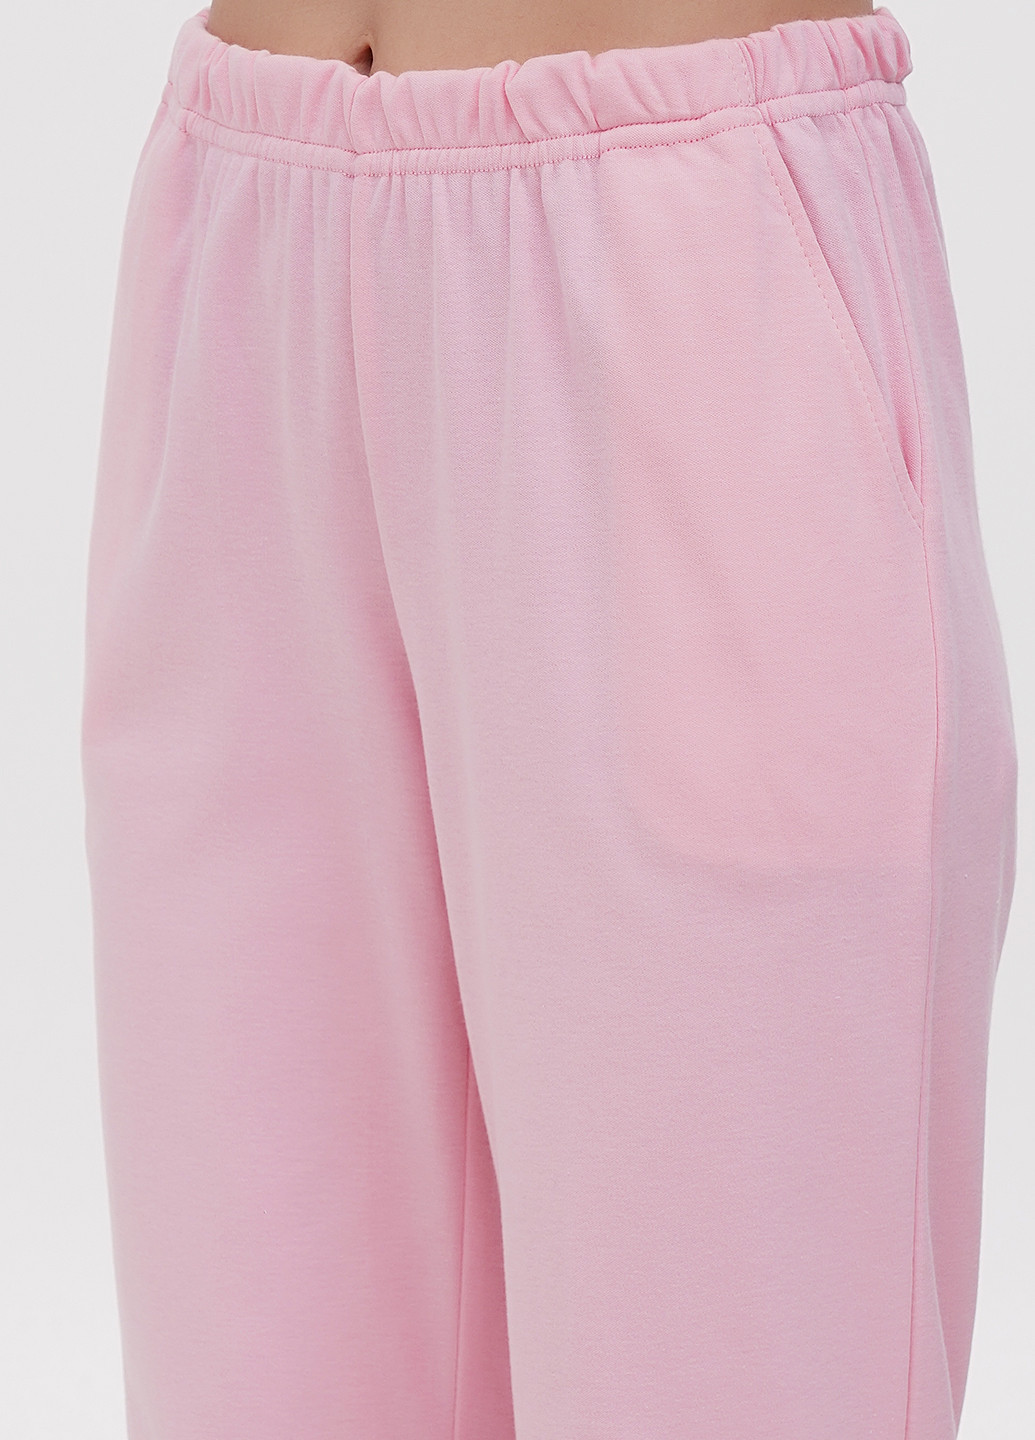 Розовая всесезон пижама (лонгслив, брюки) лонгслив + брюки Lucci